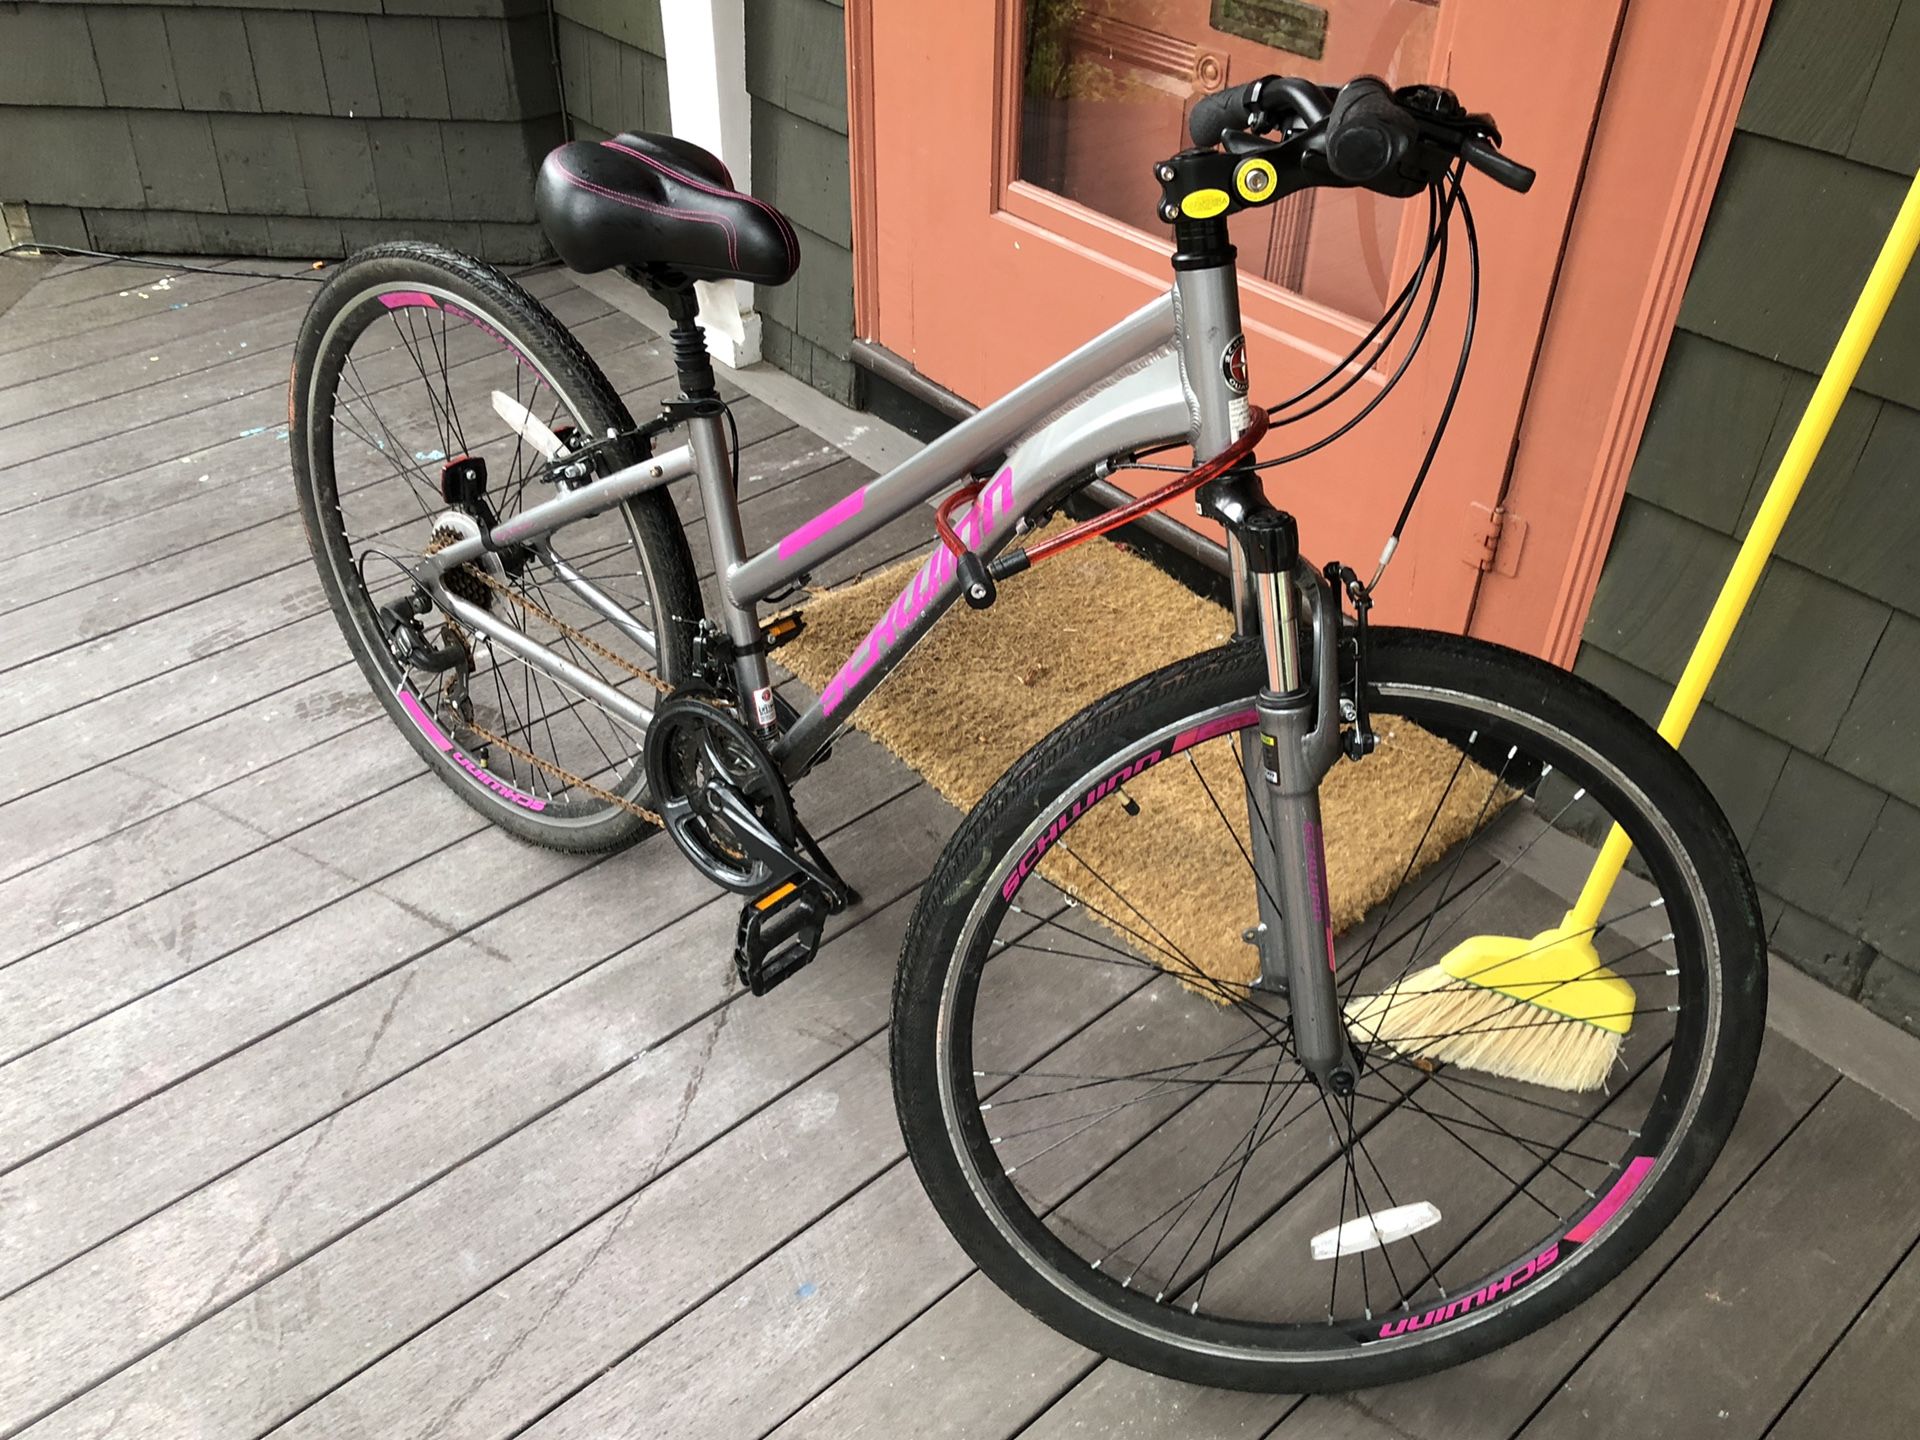 Schwinn Bike bought from target in September 2018